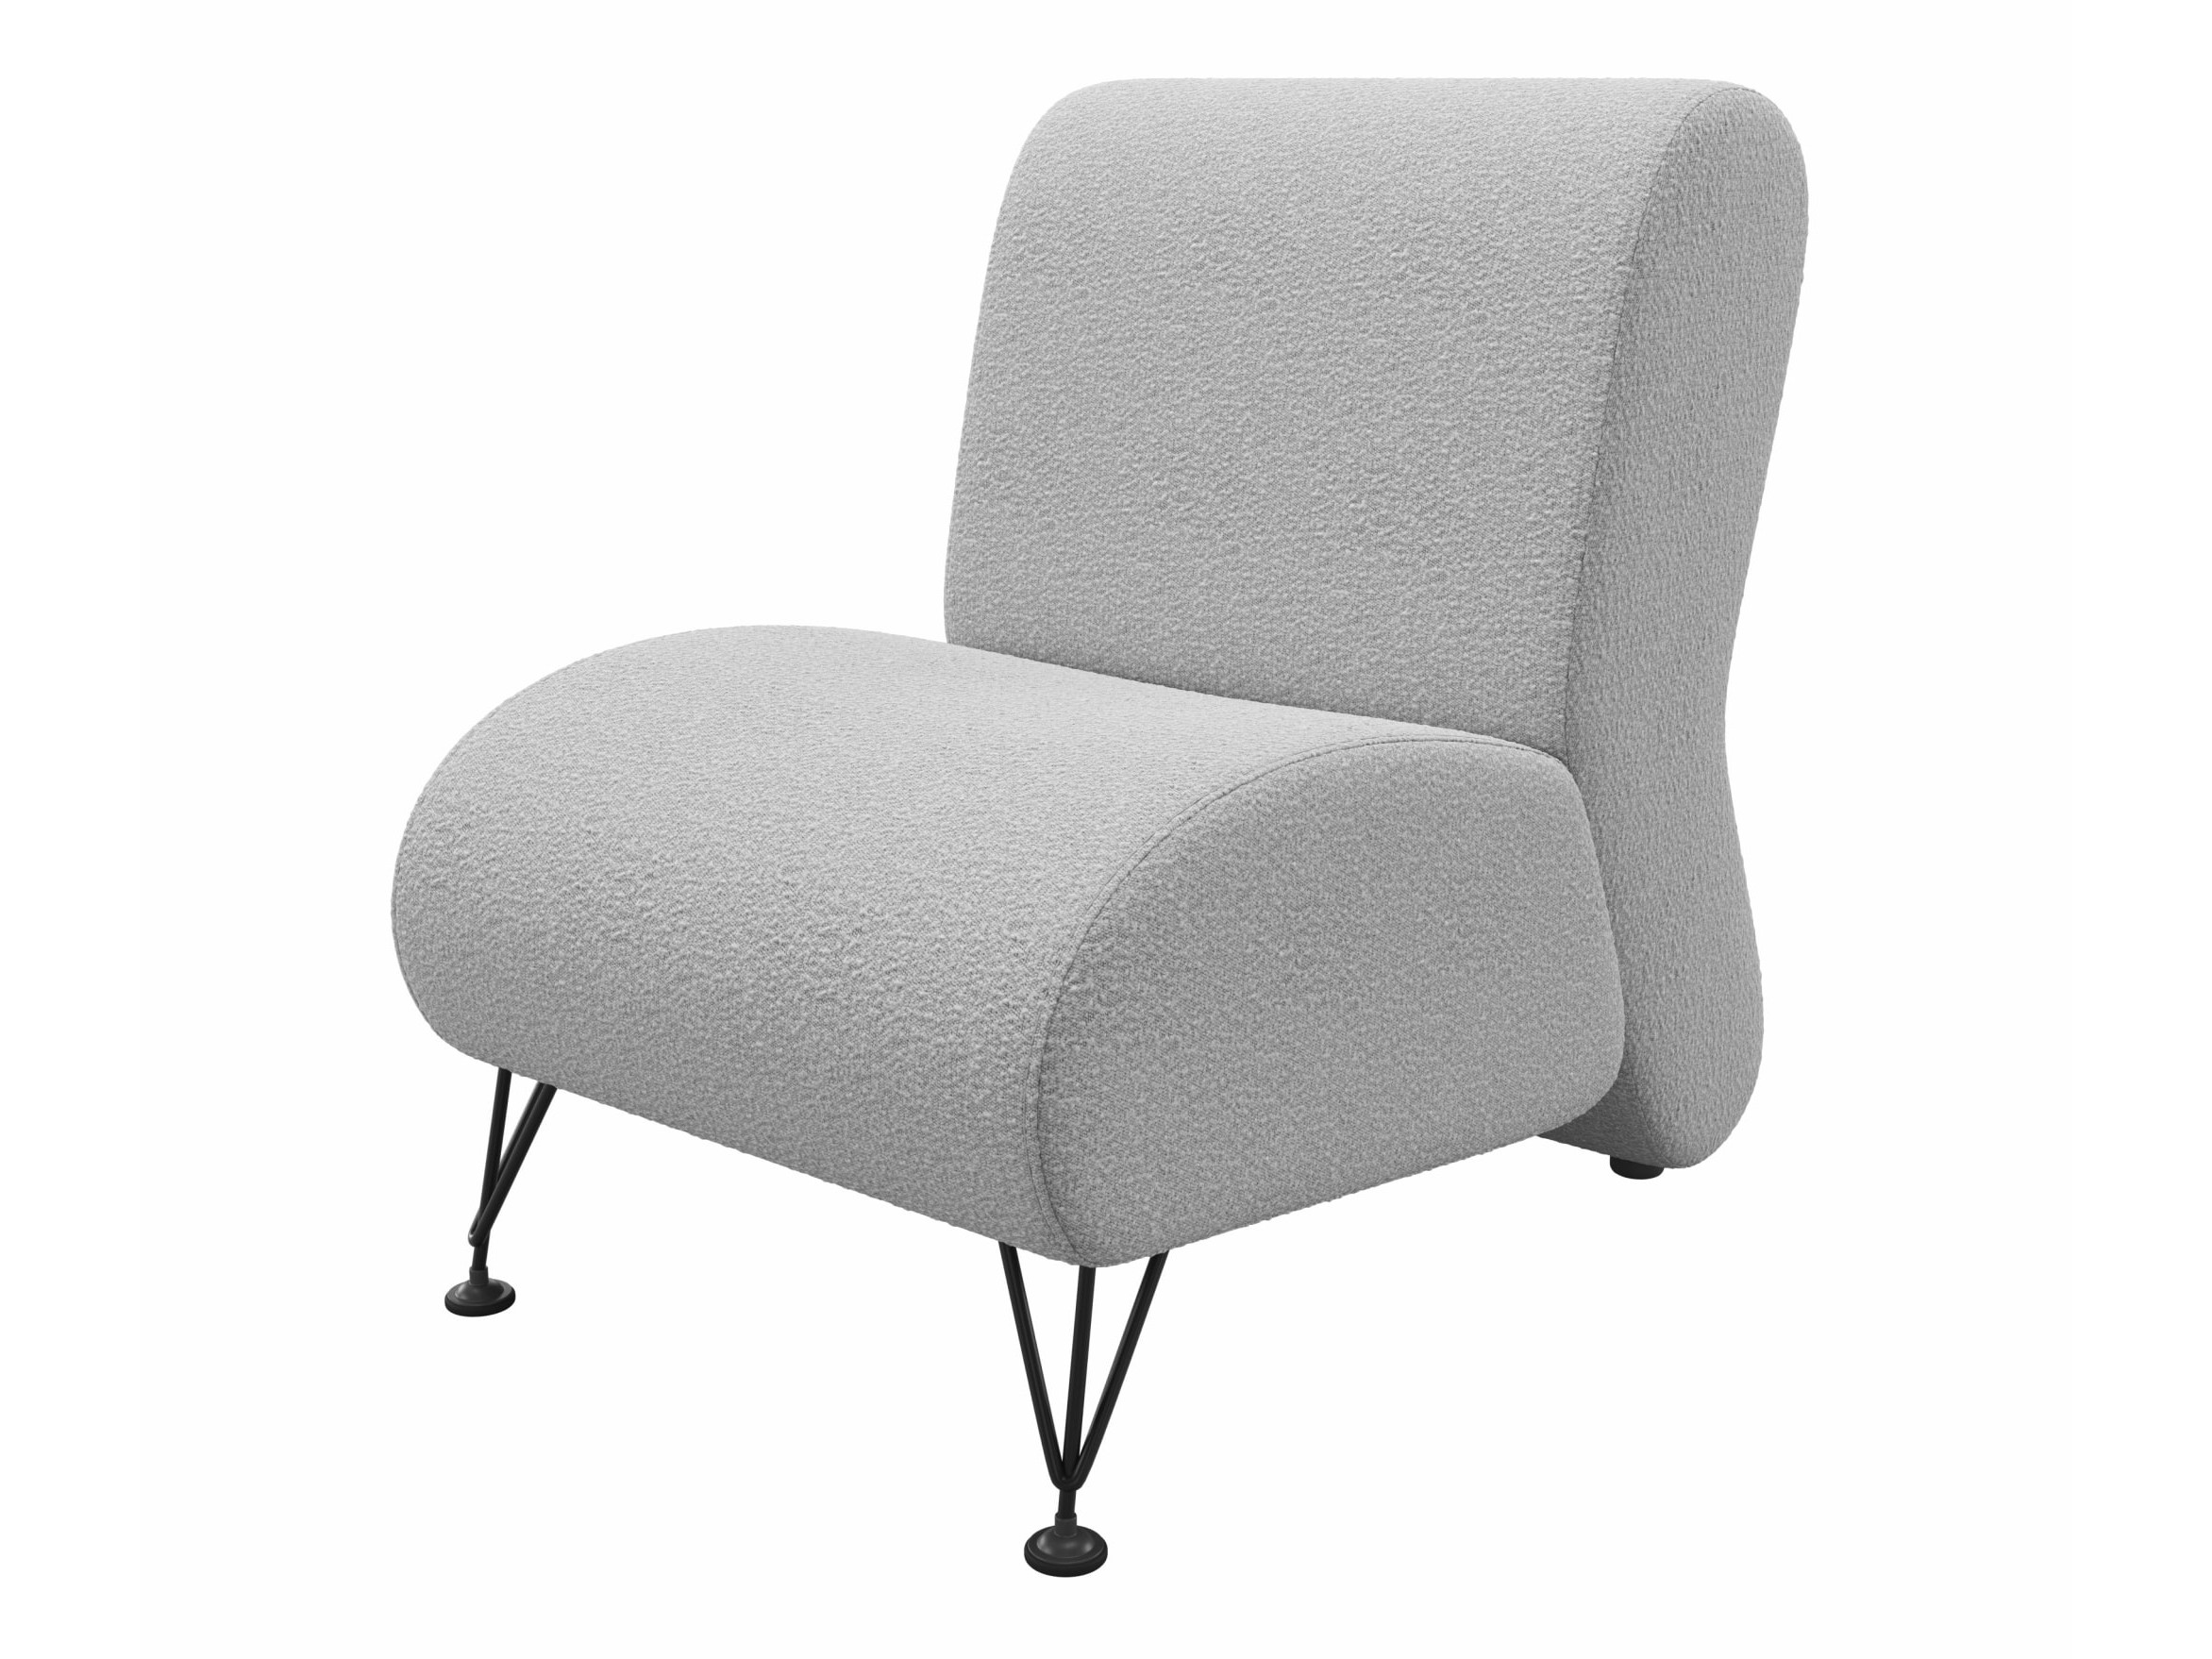 Мягкое дизайнерское кресло Pati букле светло-серый MebelVia светло-серый, букле цена и фото